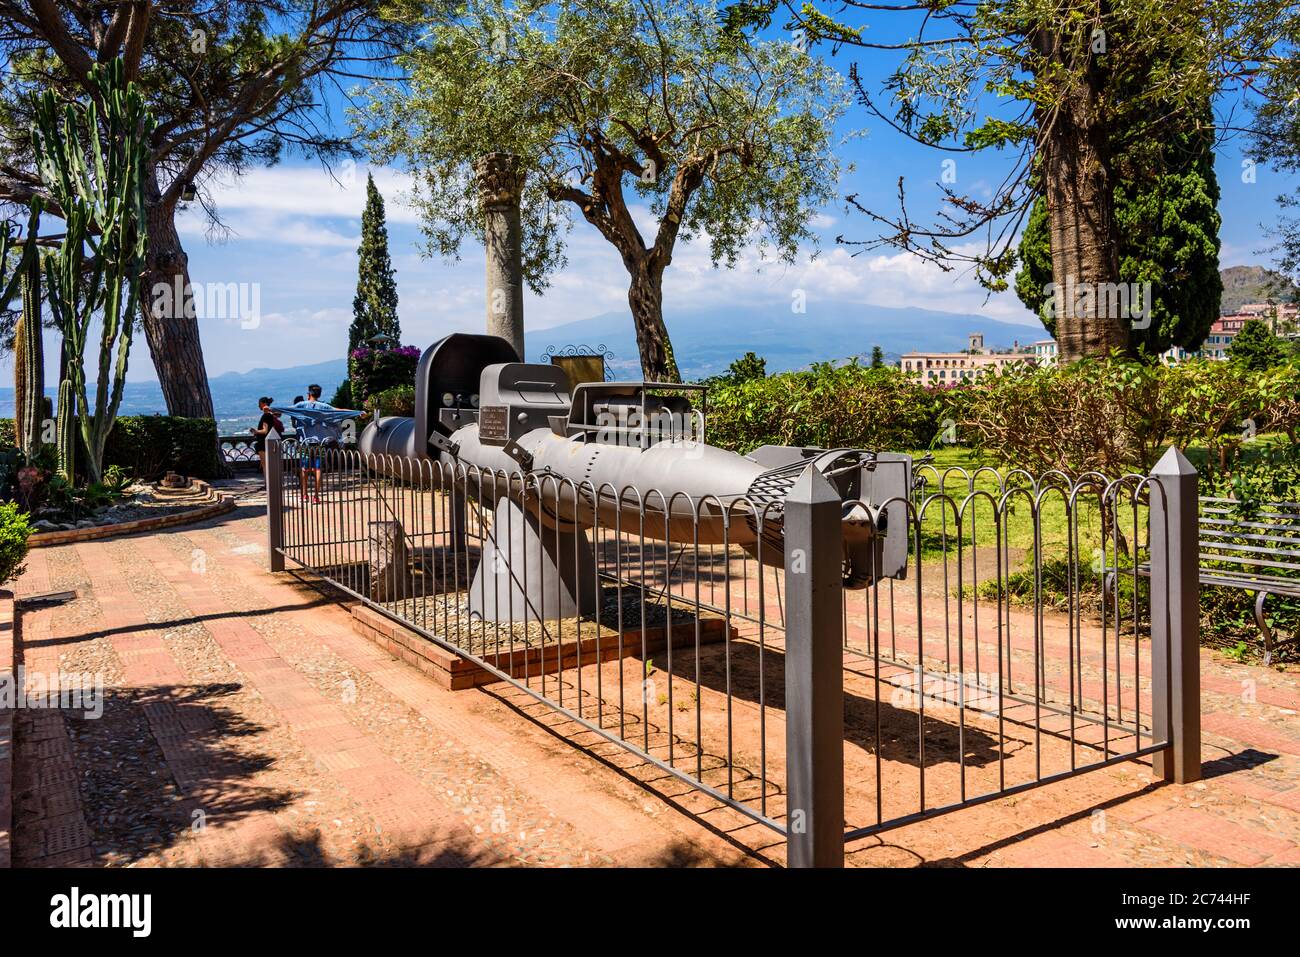 Der Giardino Pubblico in Taormina Sizilien ist tagsüber ein wunderbarer Rückzugsort dem Trubel der Tagestouristen zu entkommen und in Ruhe zu entspann Stock Photo